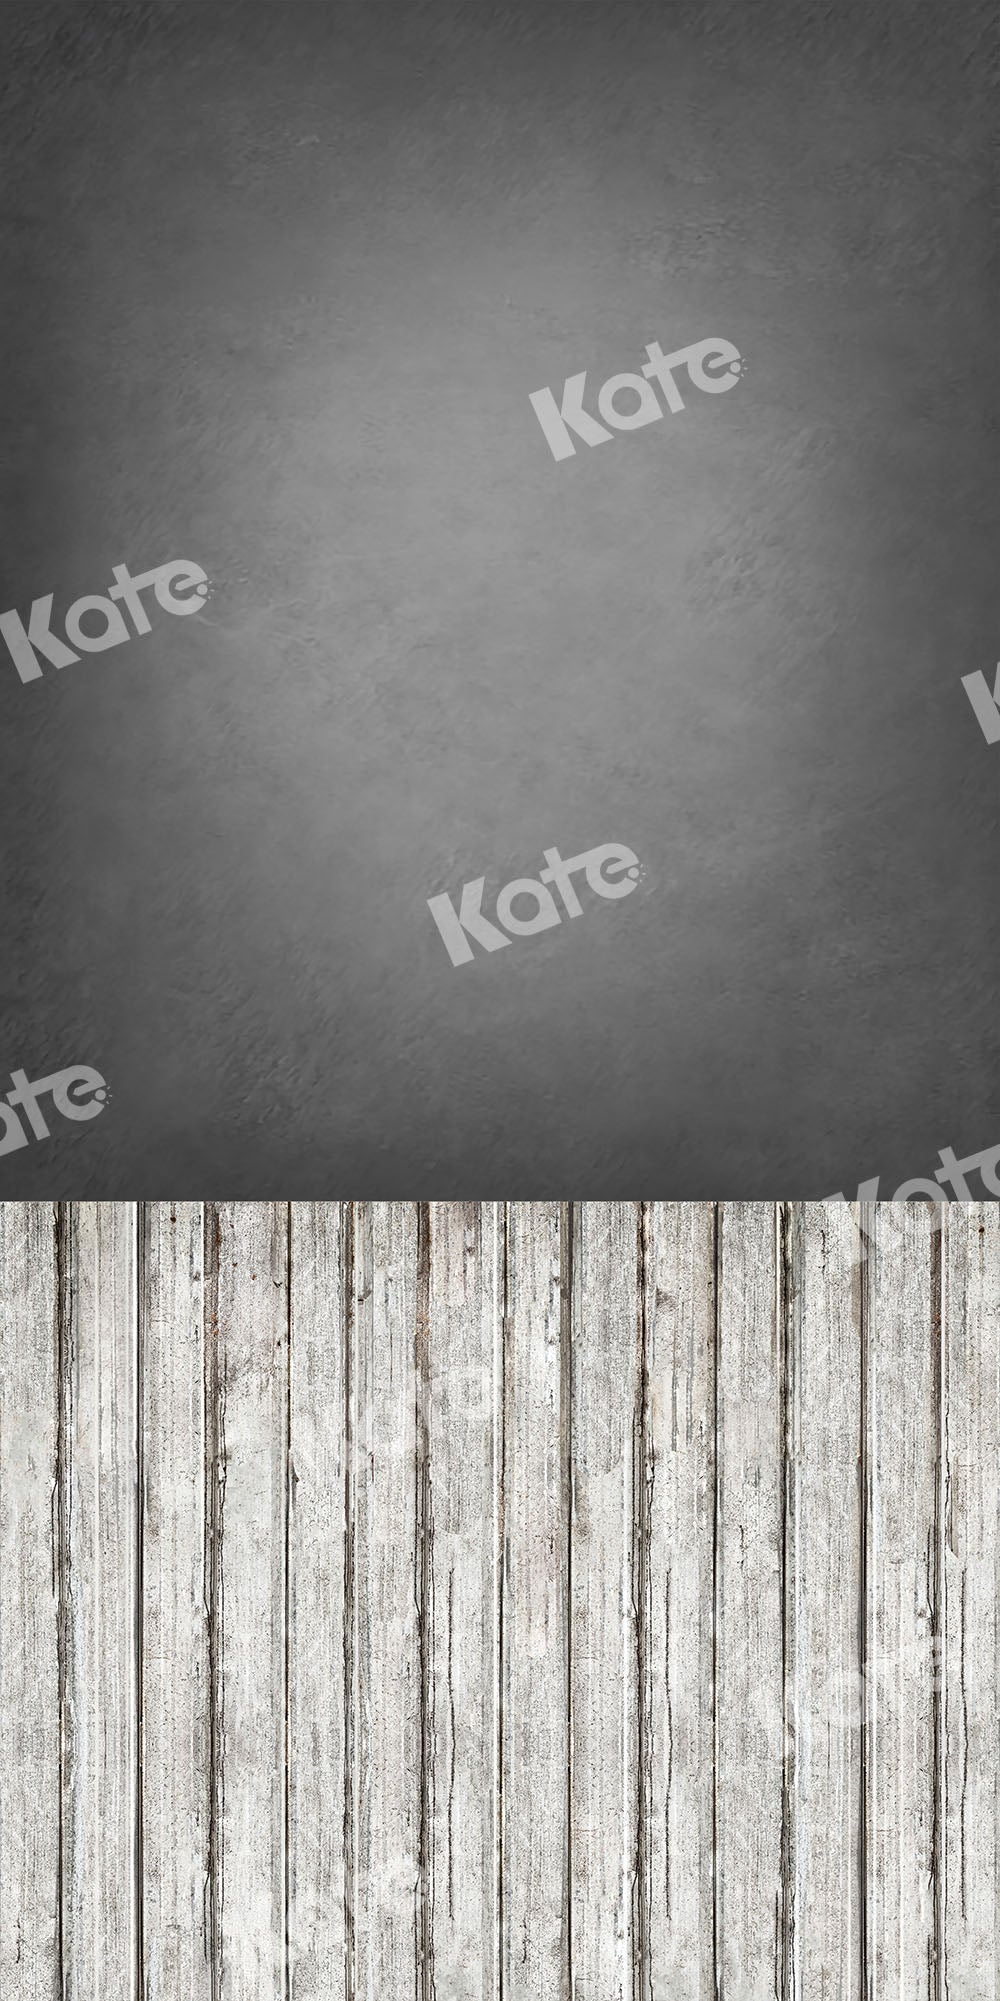 Kate 木製マットの床の背景セットと抽象的な灰色の壁